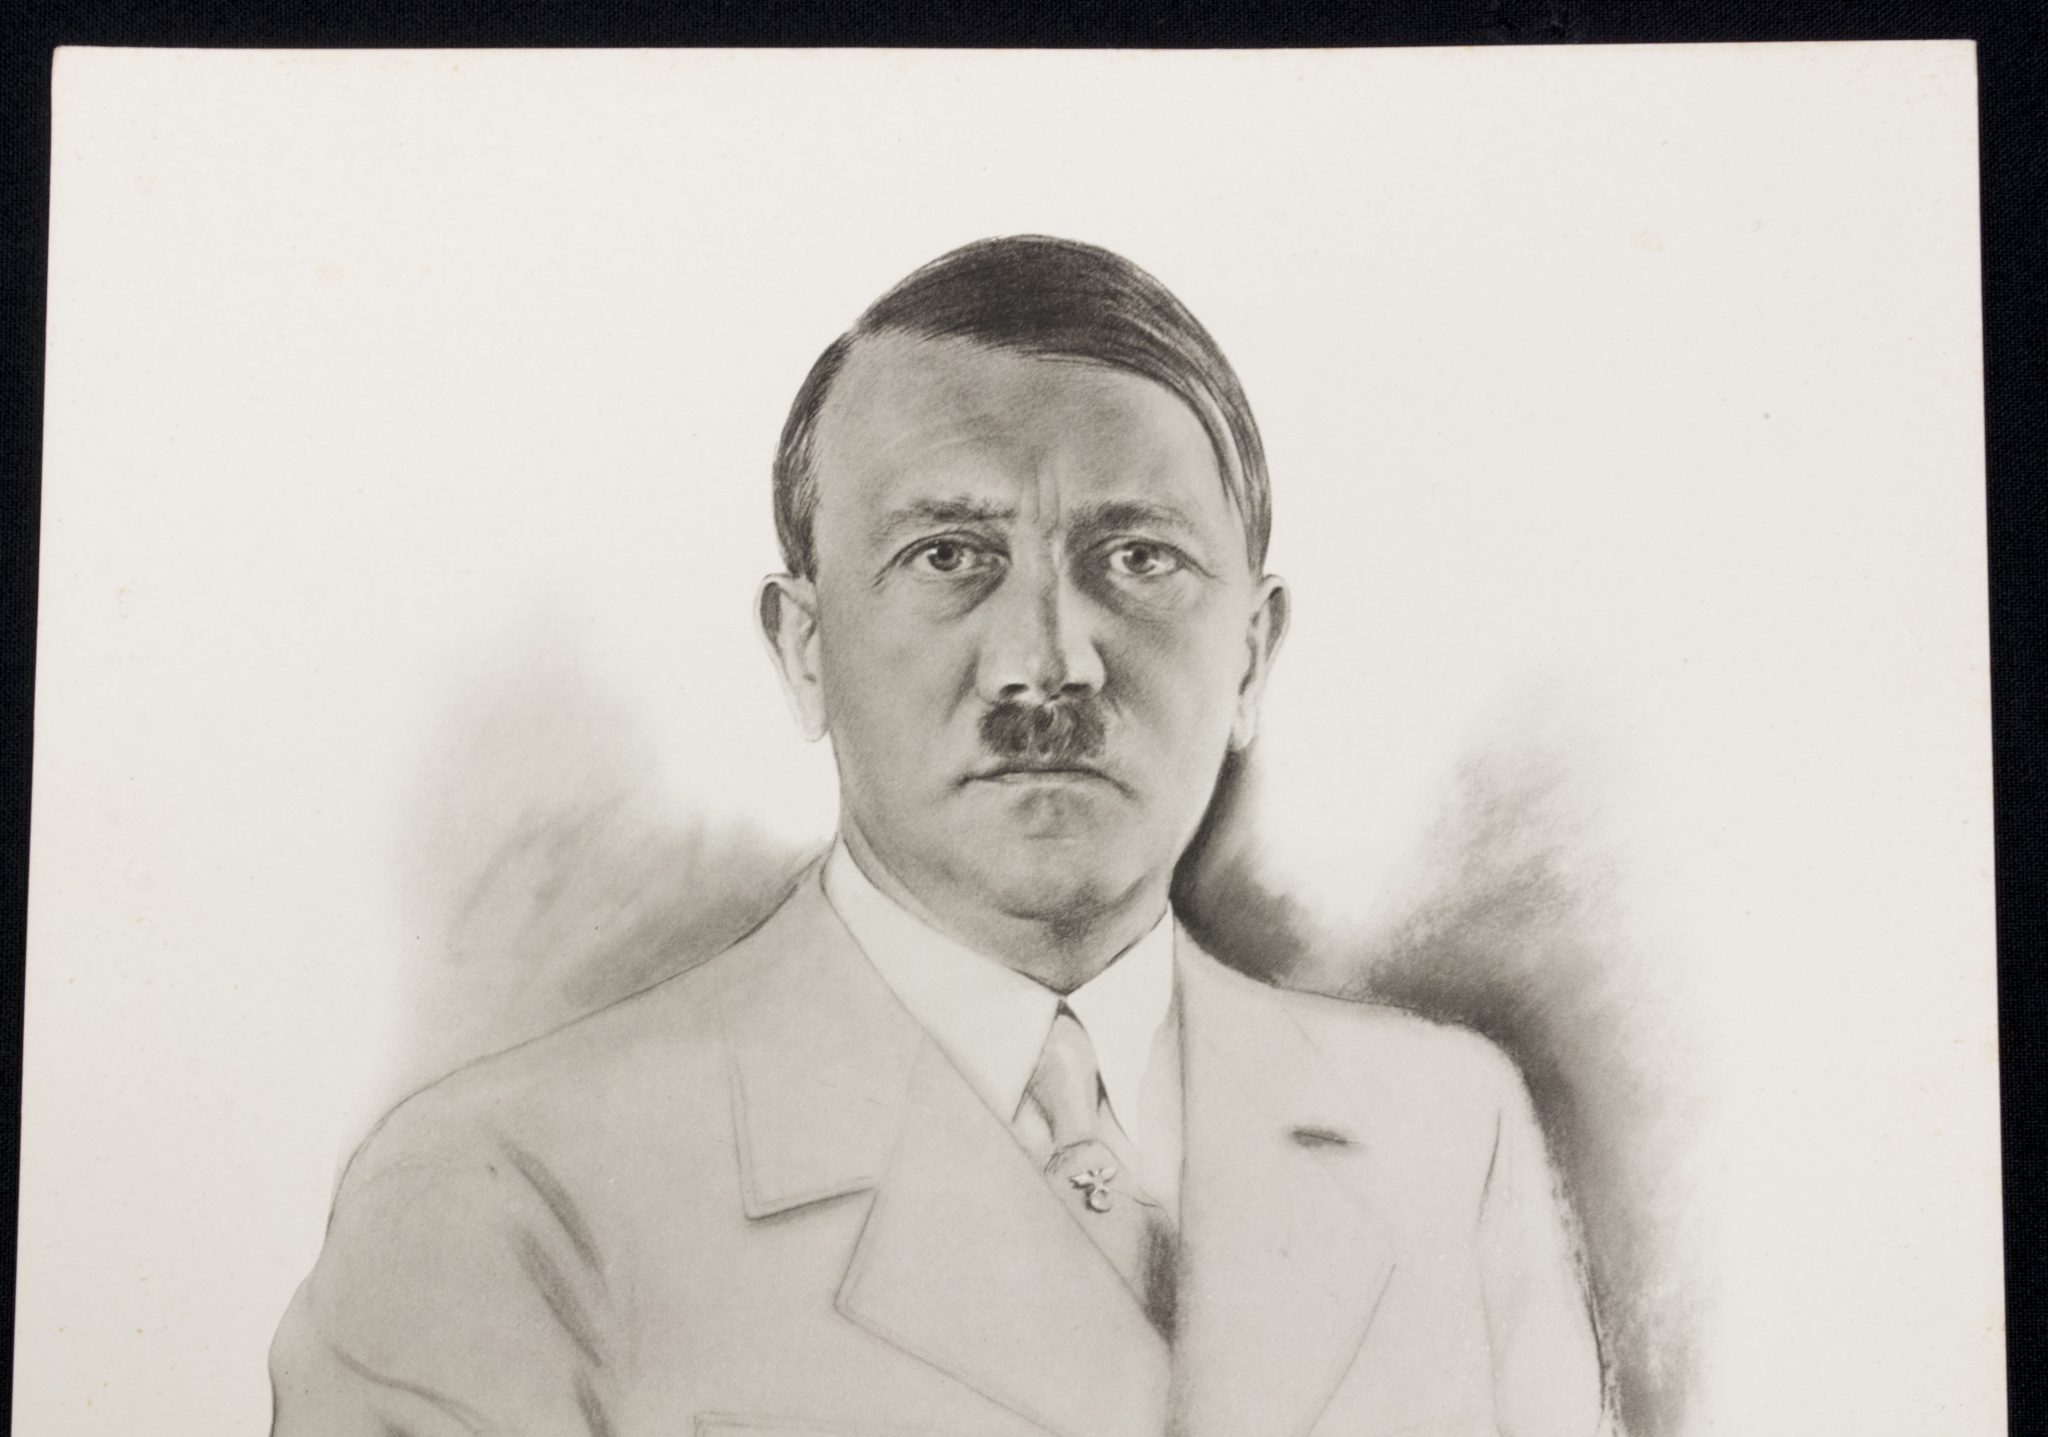 (Photo) Der Führer Adolf Hitler photo-drawing by E.Denzel (Large size 32x24cm)